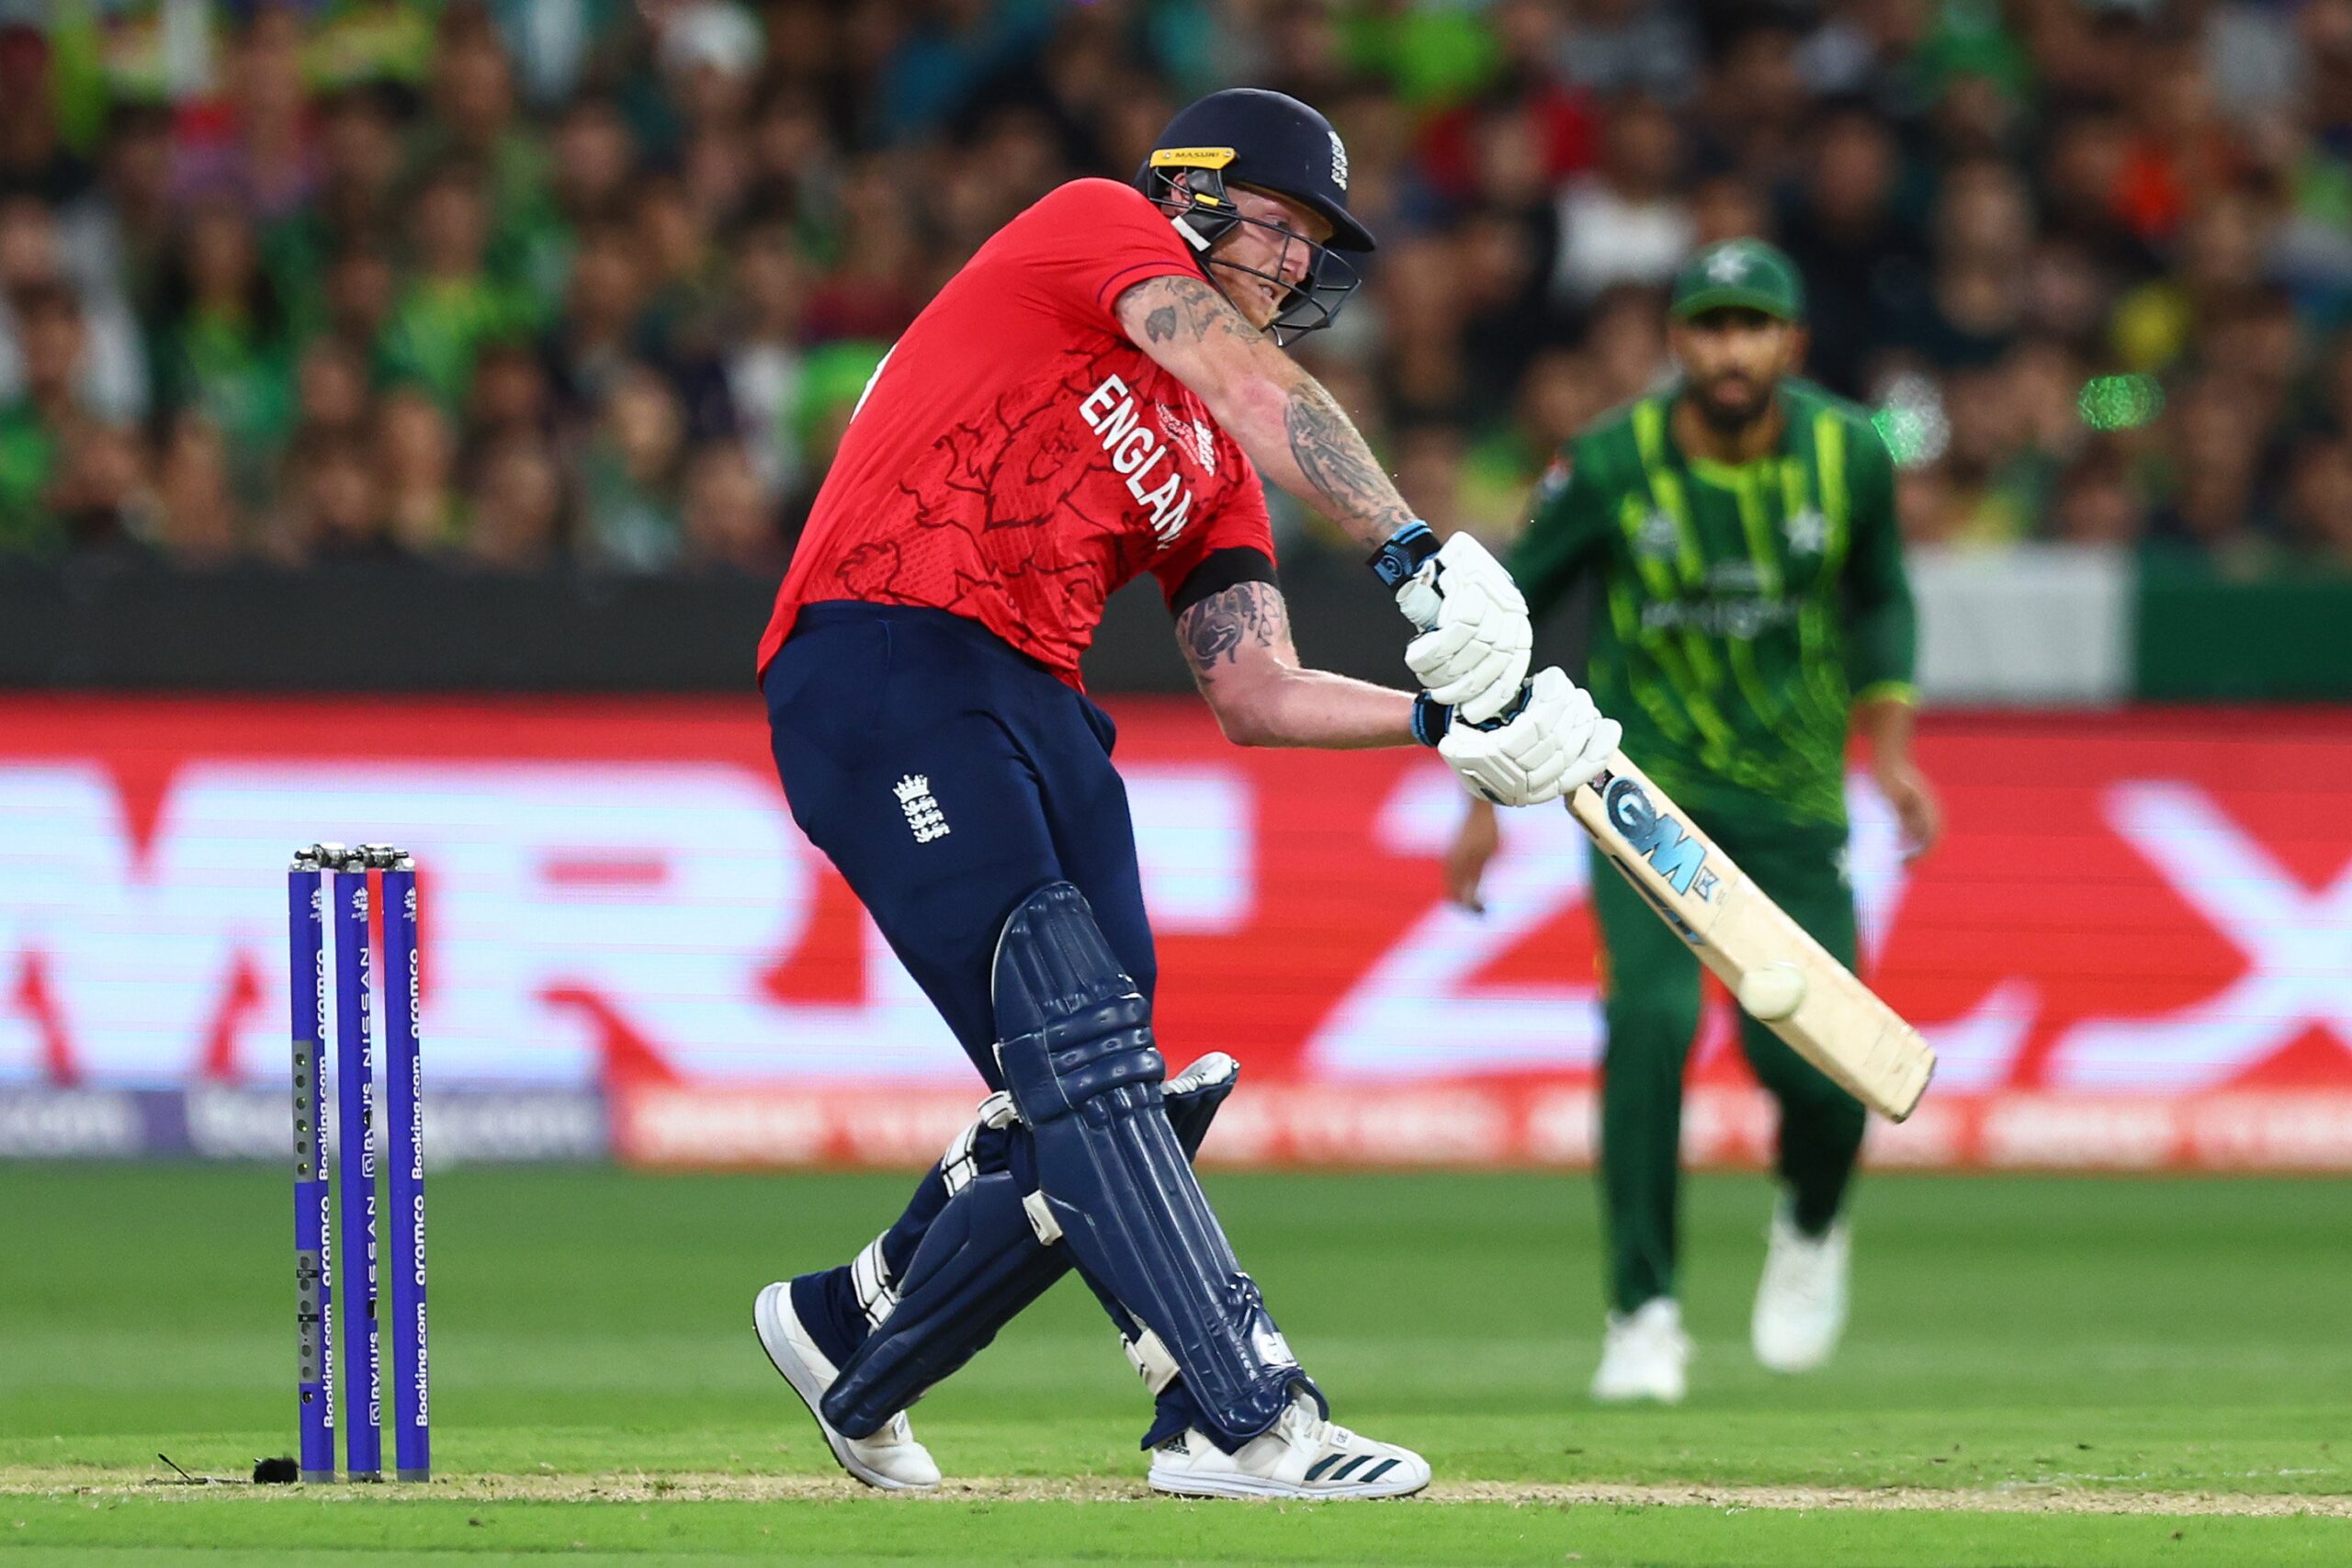 ICC T20 World Cup 2022 के फाइनल में पाकिस्तान पस्त, इंग्लैंड ने पांच विकेट से दी मात, दूसरी बार वर्ल्ड चैंपियन बने अंग्रेज